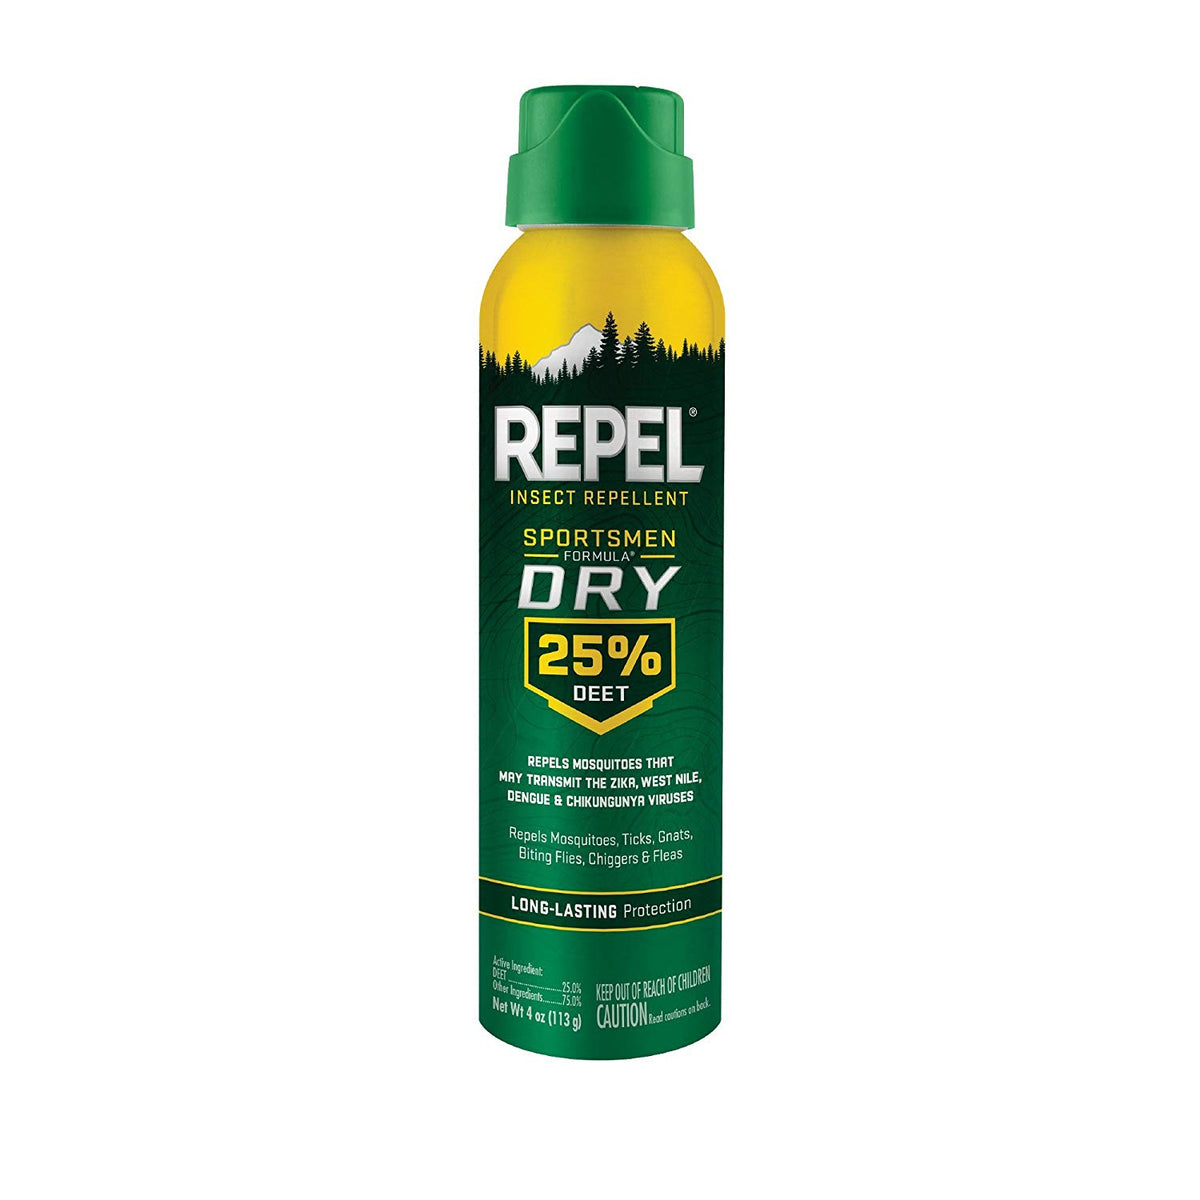 Repel HG-94133 Insect Repellent Sportsmen Formula Dry 25% DEET Aerosol, 4 Oz